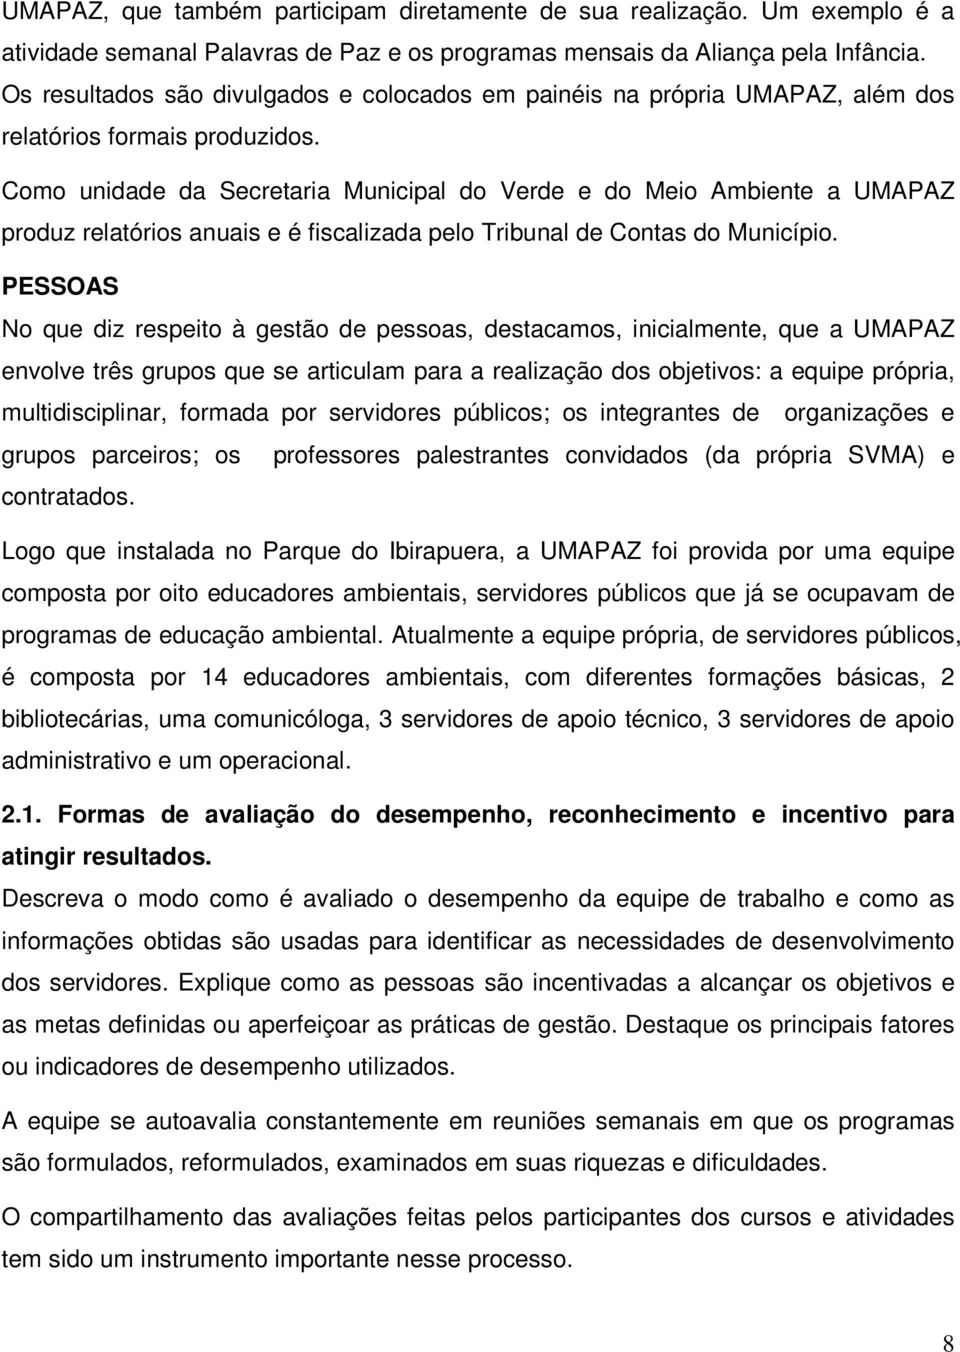 Como unidade da Secretaria Municipal do Verde e do Meio Ambiente a UMAPAZ produz relatórios anuais e é fiscalizada pelo Tribunal de Contas do Município.